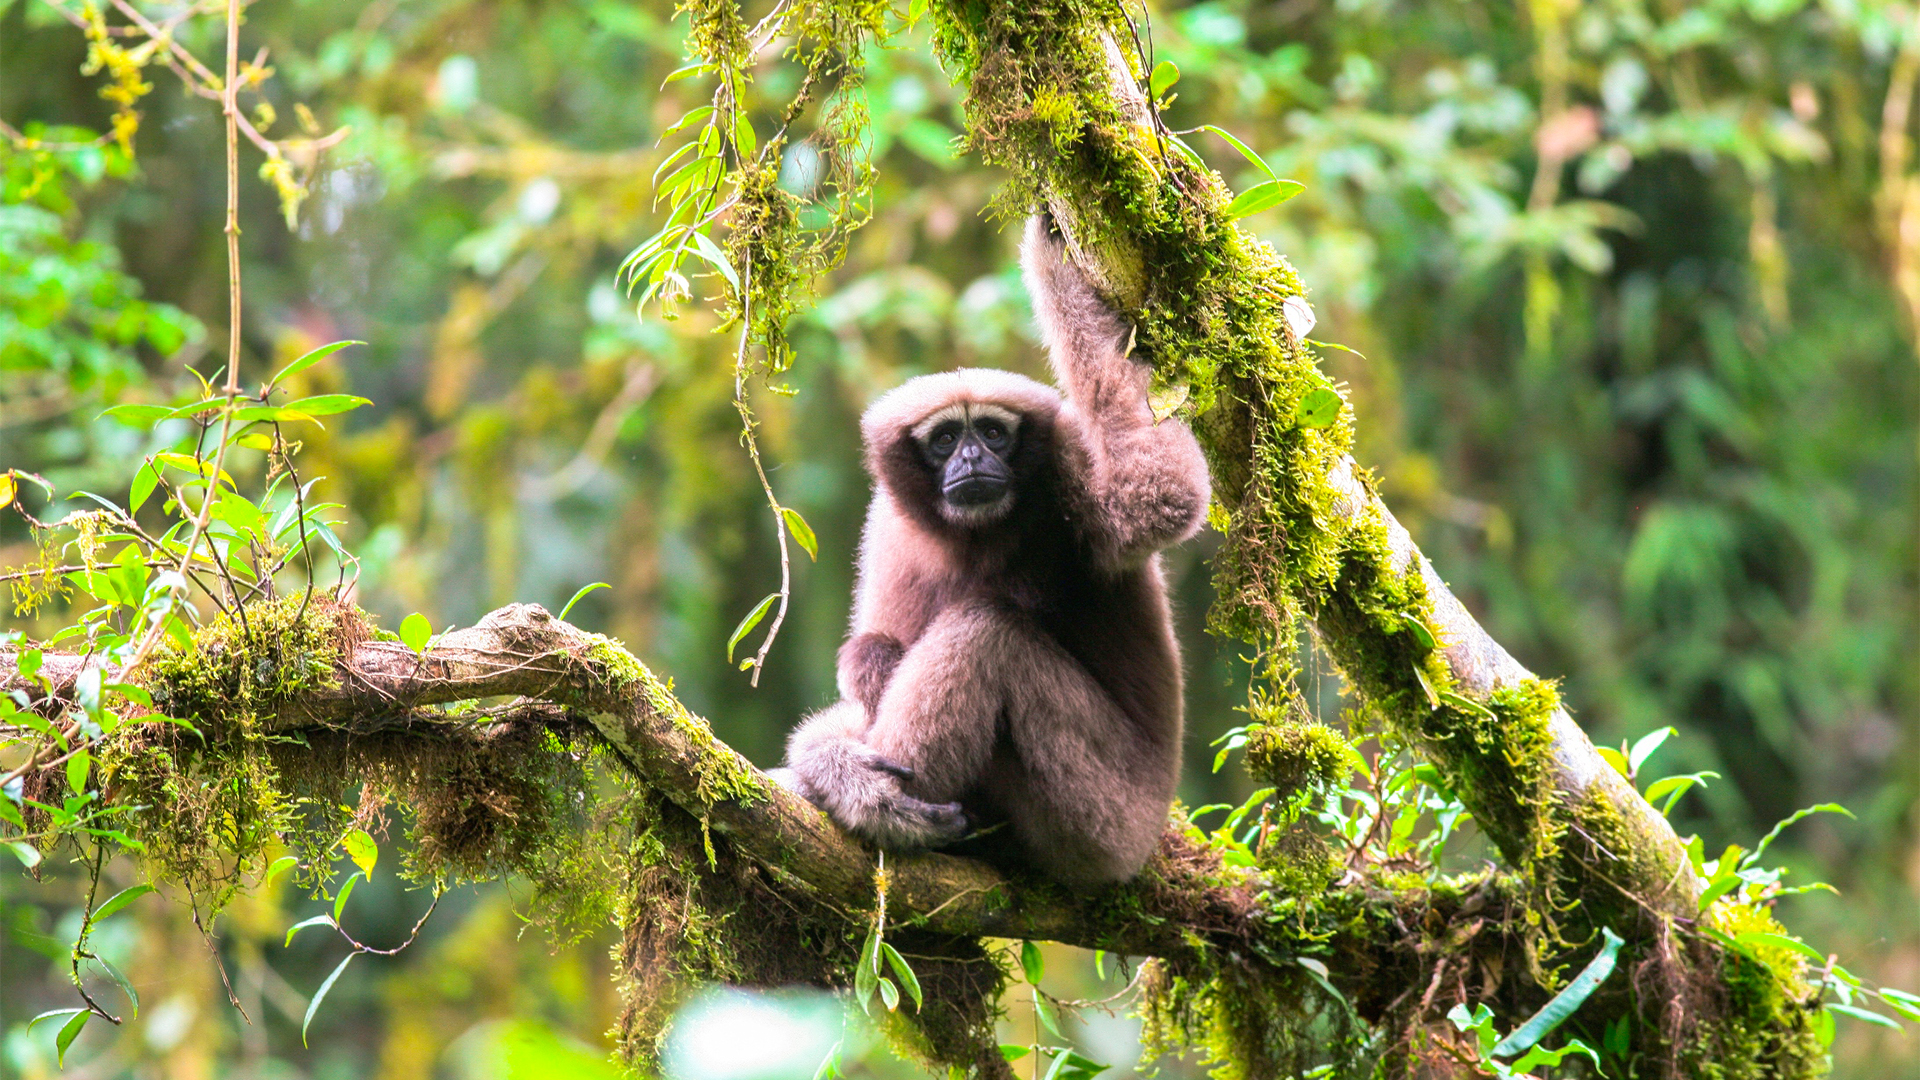 Skywalker Hoolock Gibbon | Bildquelle: FanPengfei/WWF